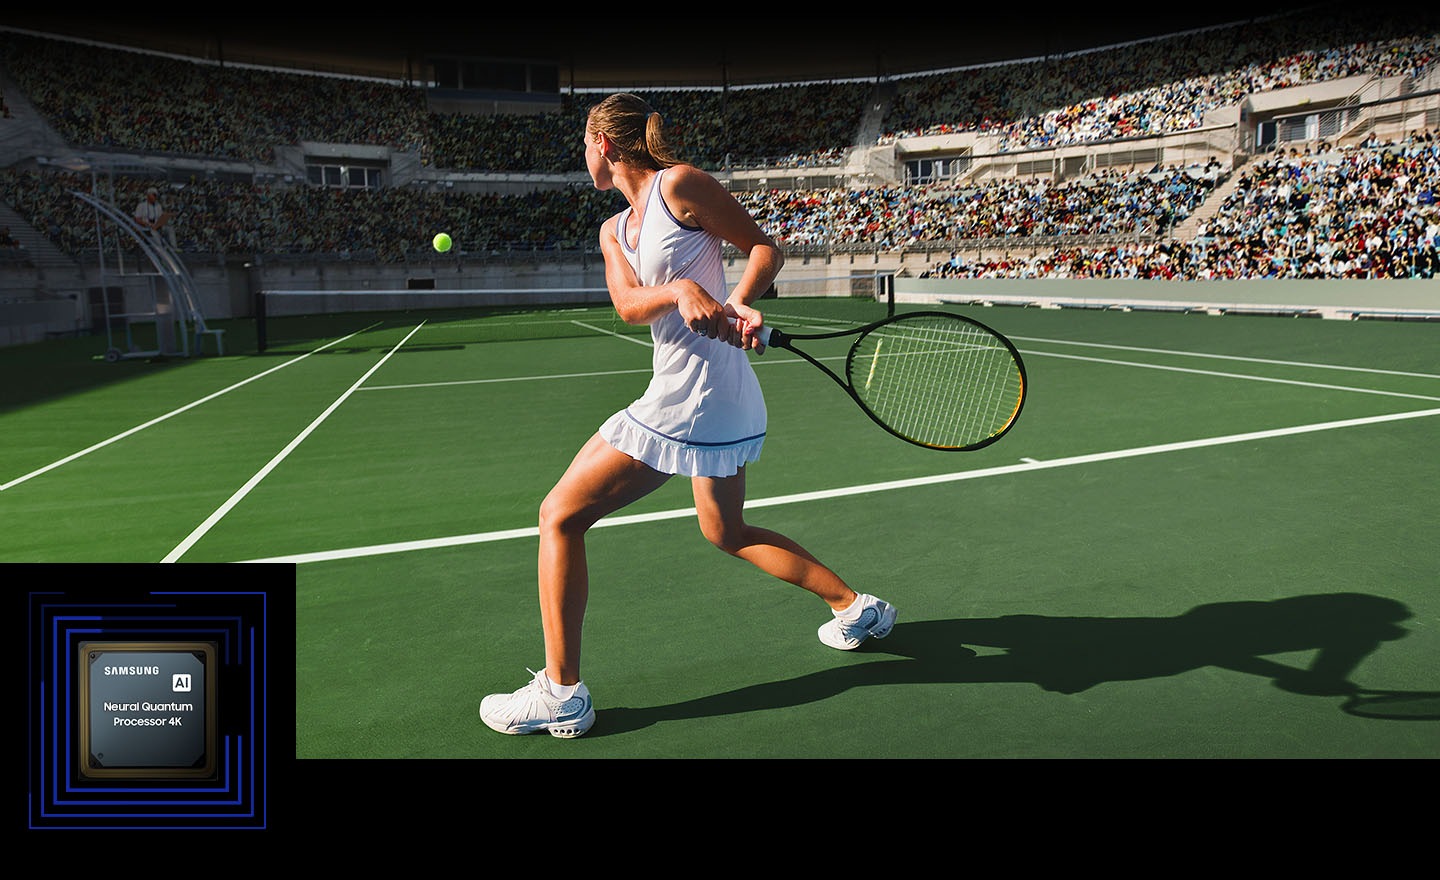 یک زن در مقابل جمعیت زیادی تنیس بازی می کند. پردازنده کوانتومی عصبی 4K بسیاری از اشیاء موجود در صفحه نمایش را پردازش می کند و کل صحنه را تقویت می کند. پردازنده کوانتومی عصبی 4K در گوشه پایین leftand پایین نمایش داده می شود